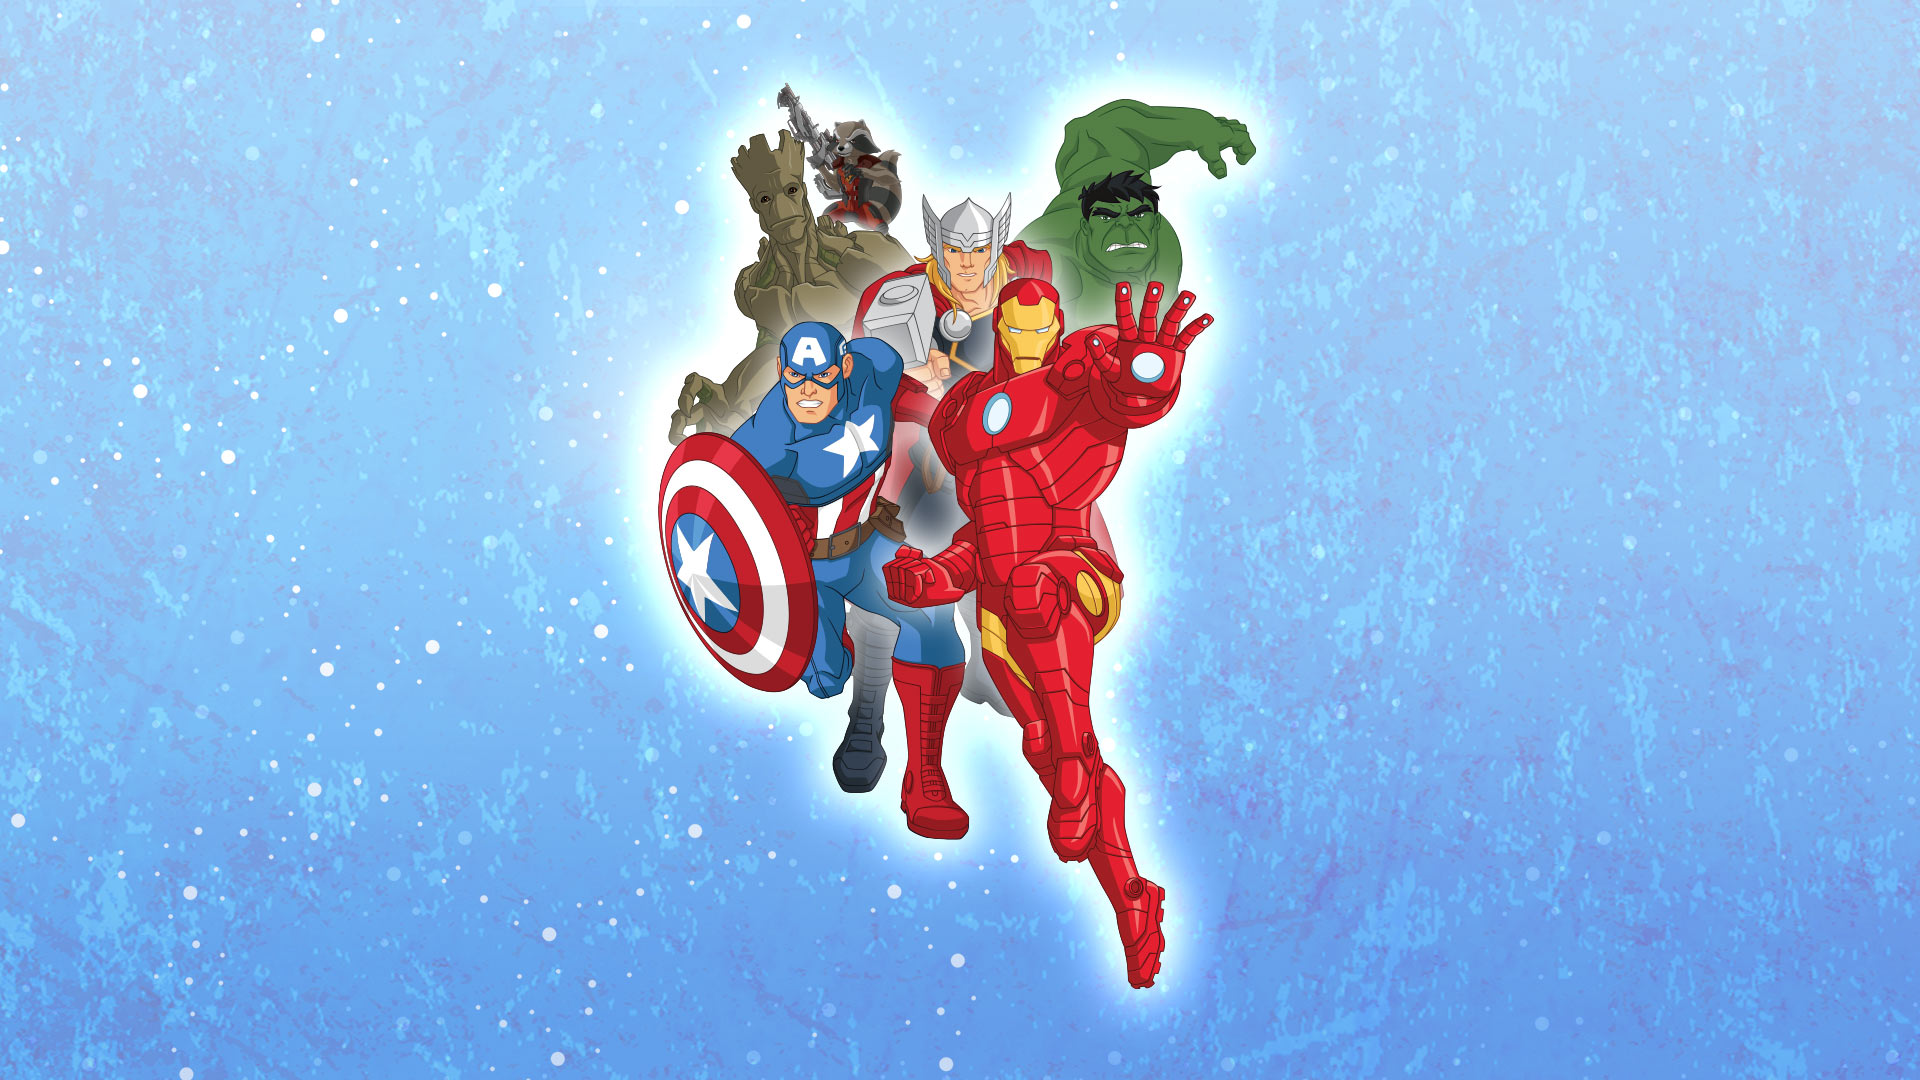 Marvel's Avengers Assemble - Disney+ Hotstar